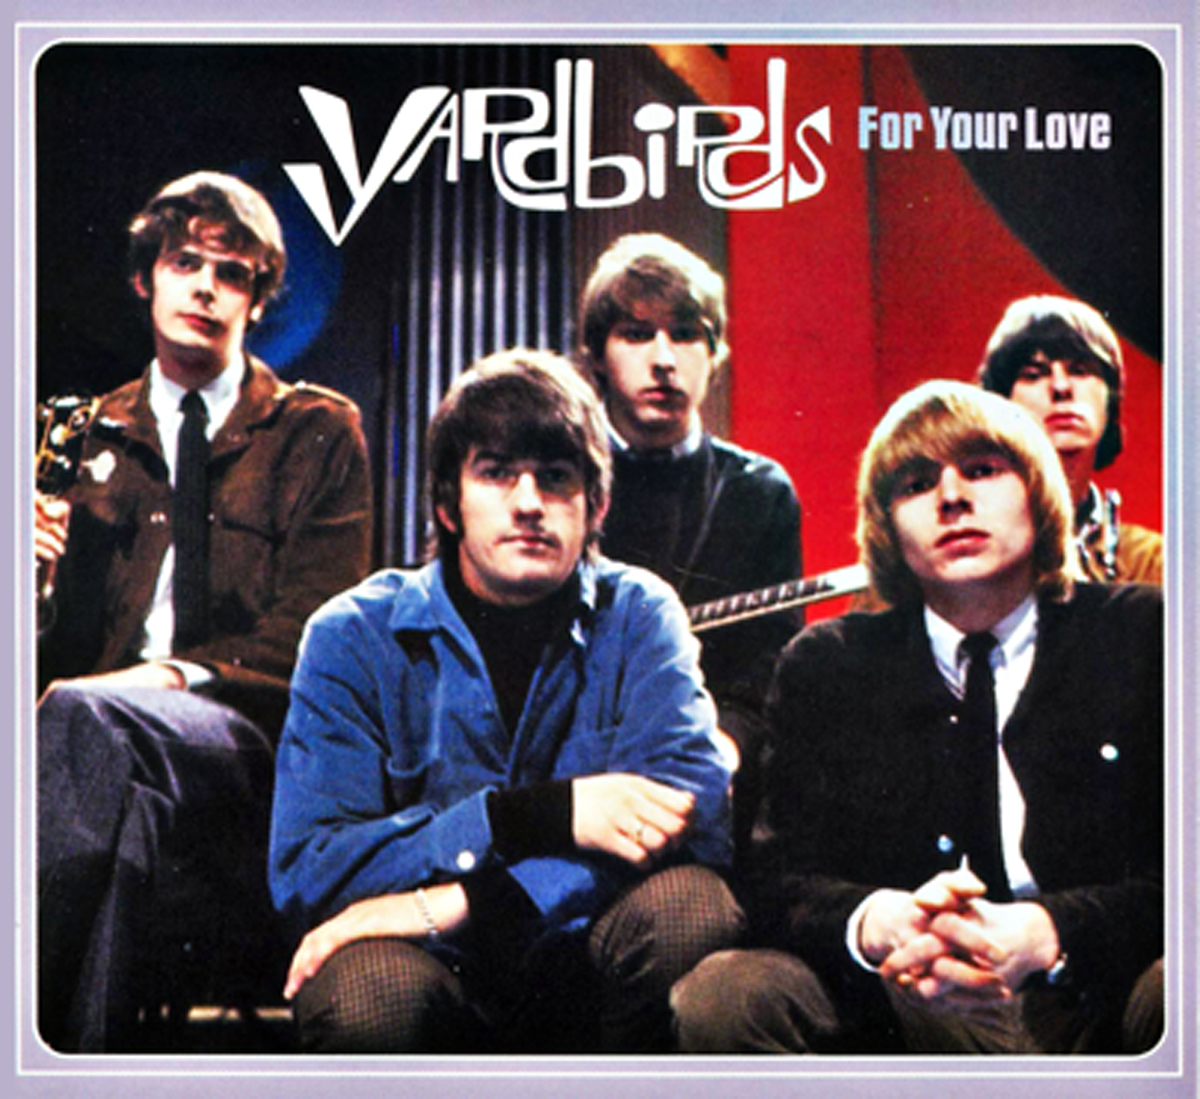 “For Your Love” - Yardbirds 1967